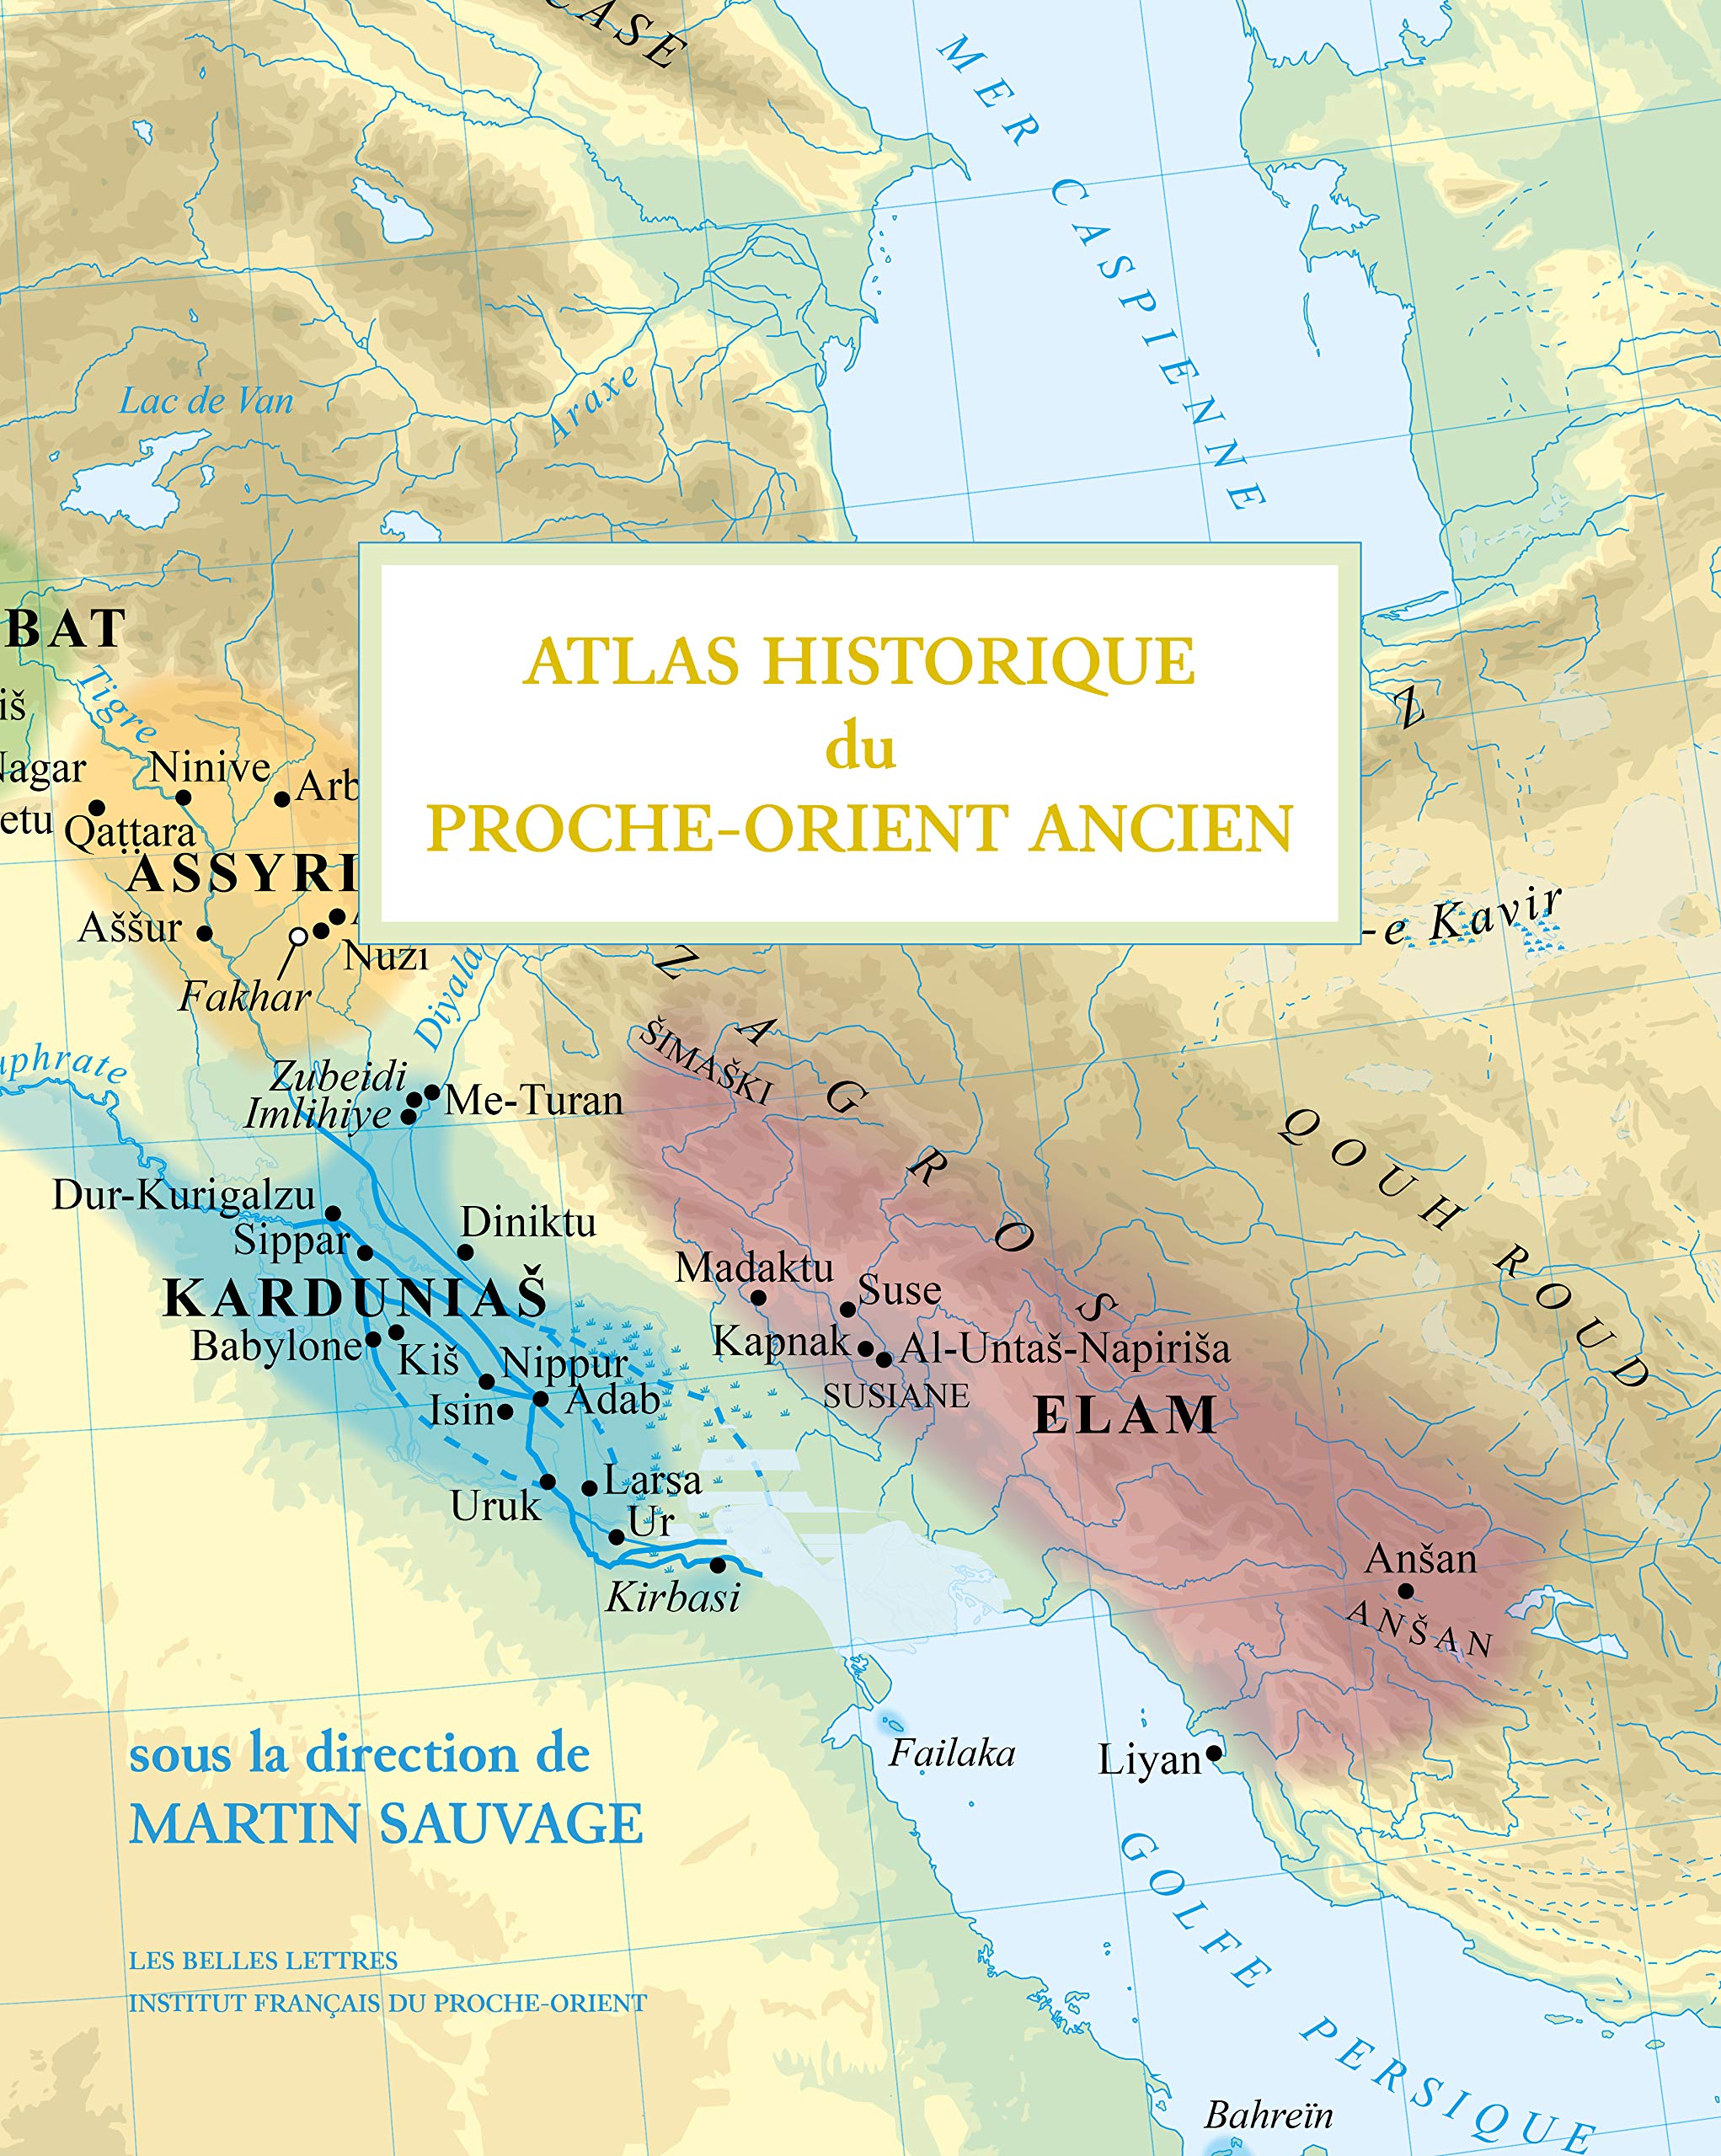 Atlas historique du Proche-Orient ancien, 2020, 218 p.